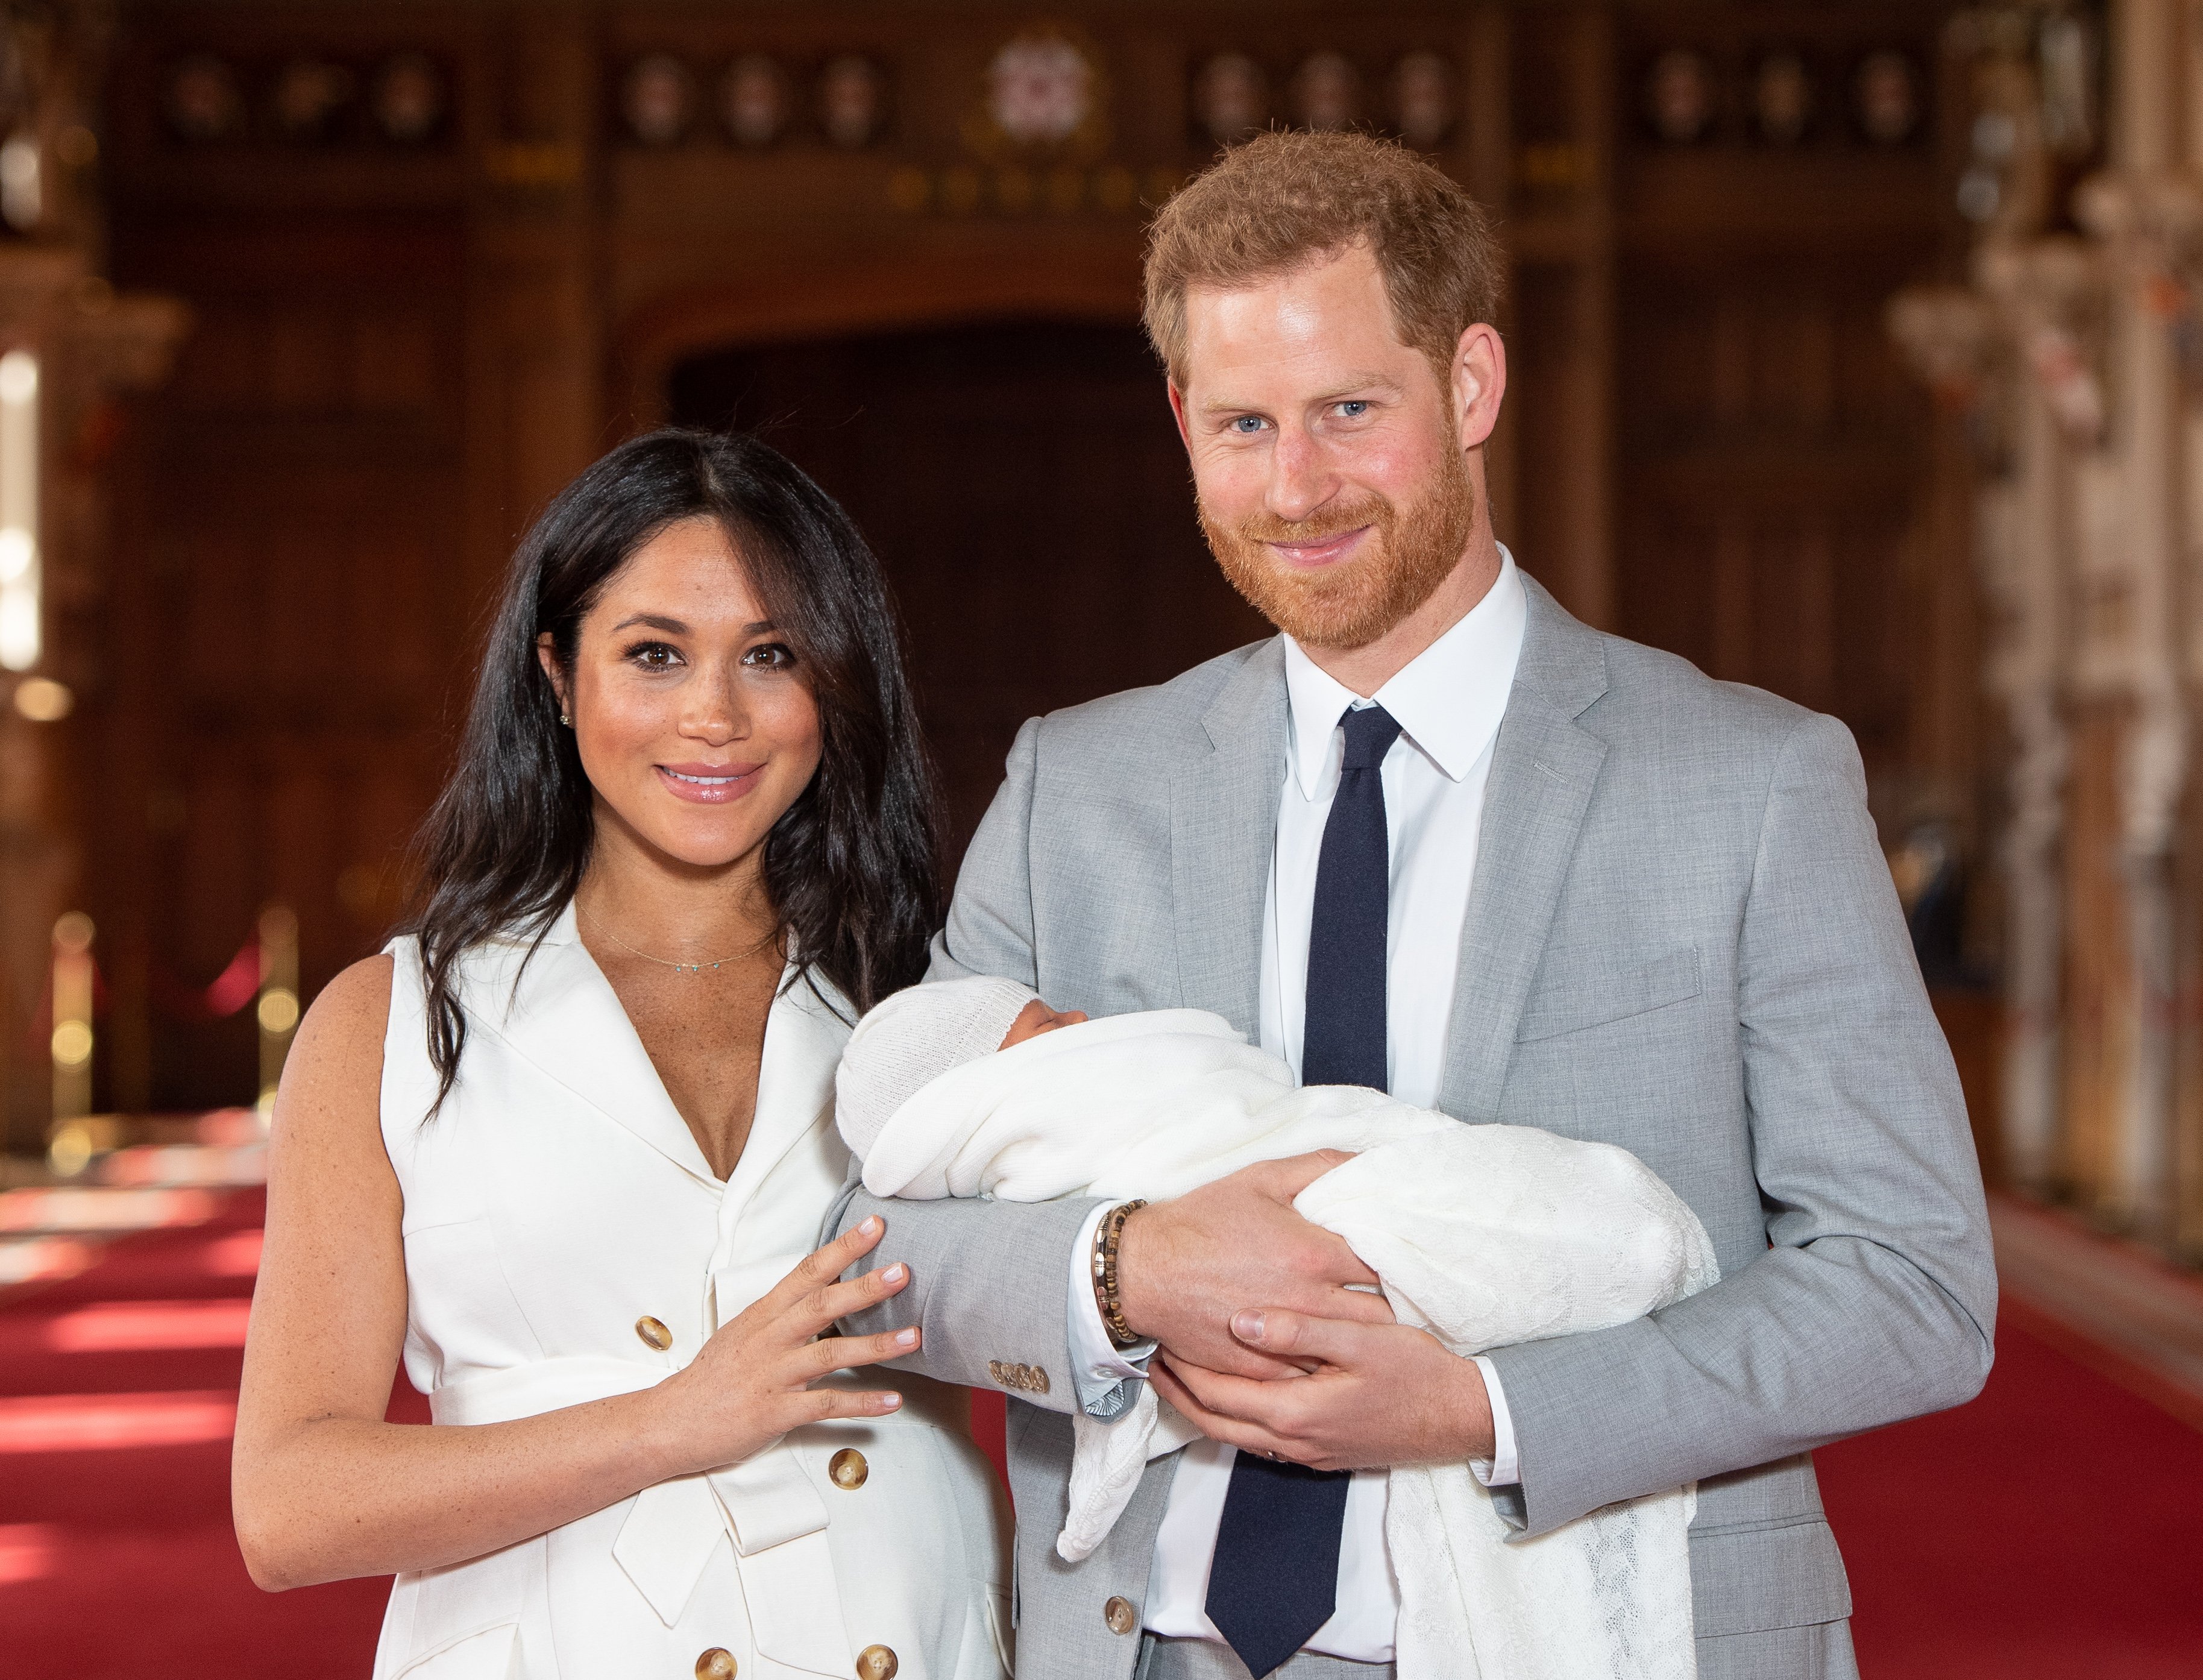 El príncipe Harry, el duque de Sussex y Meghan, la duquesa de Sussex posan con su hijo recién nacido Archie Harrison Mountbatten-Windsor en St George's Hall en el Castillo de Windsor el 8 de mayo de 2019 en Windsor, Inglaterra | Foto: Getty Images